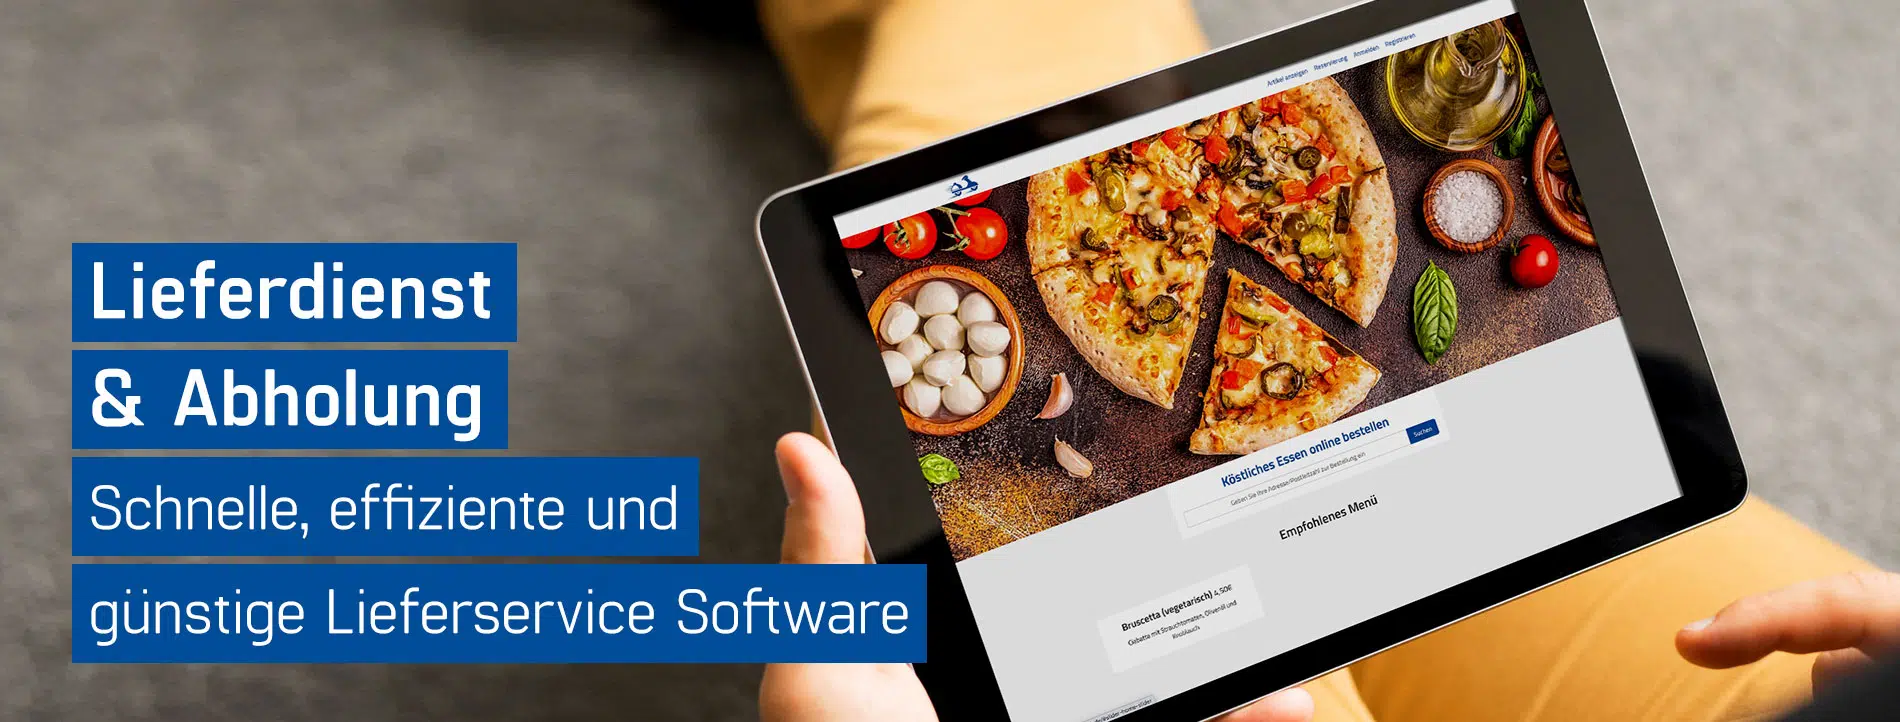 Kunde wählt am Tablet seine Online-Bestellung aus, die er über den GastroSoft Lieferdienst Online-Shop erhalten möchte